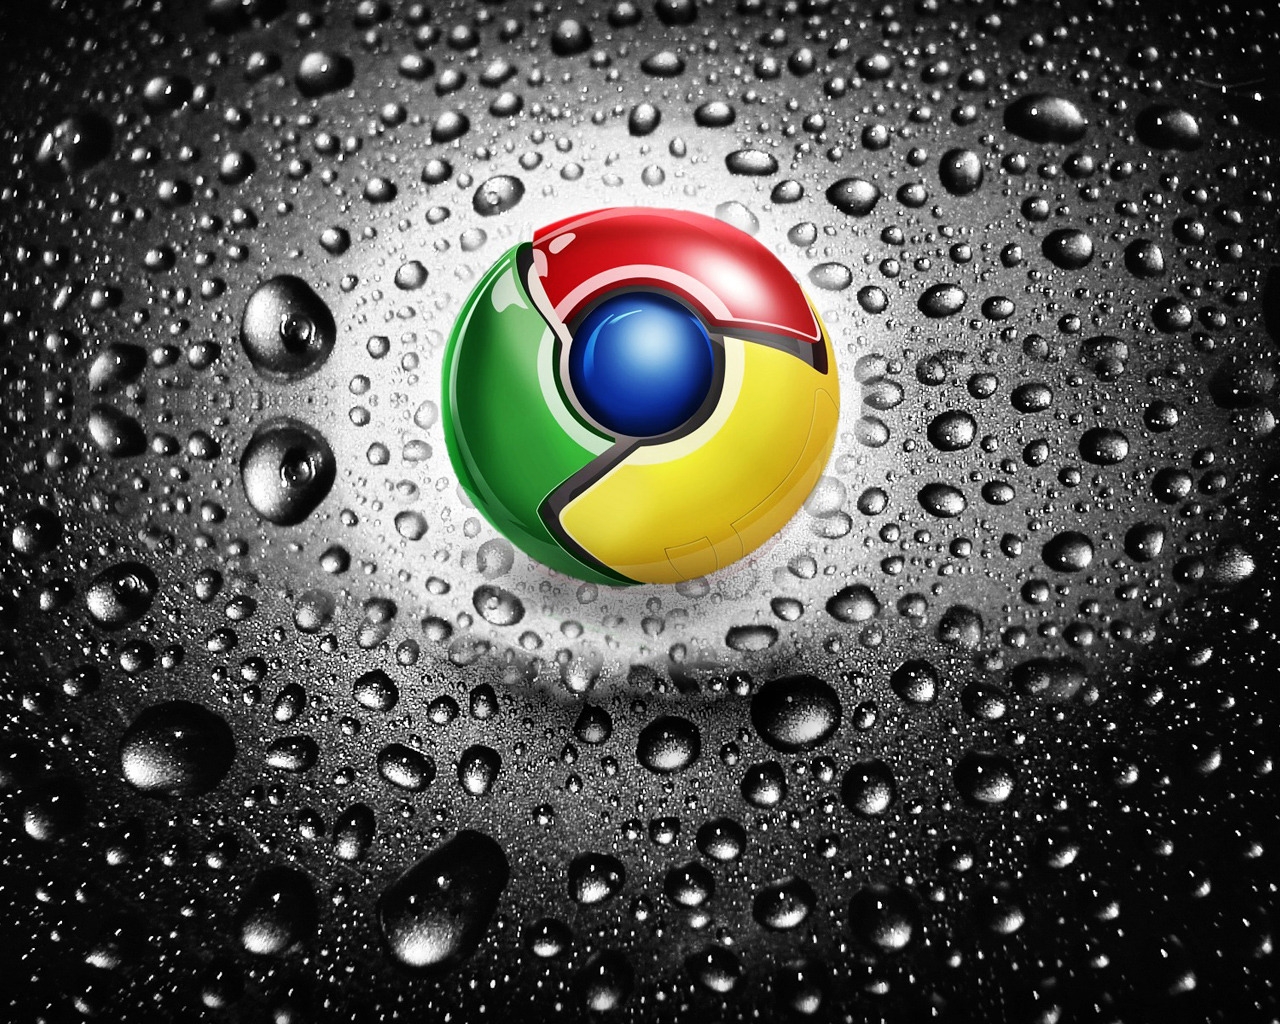 Google Chrome for 1280 x 1024 resolution